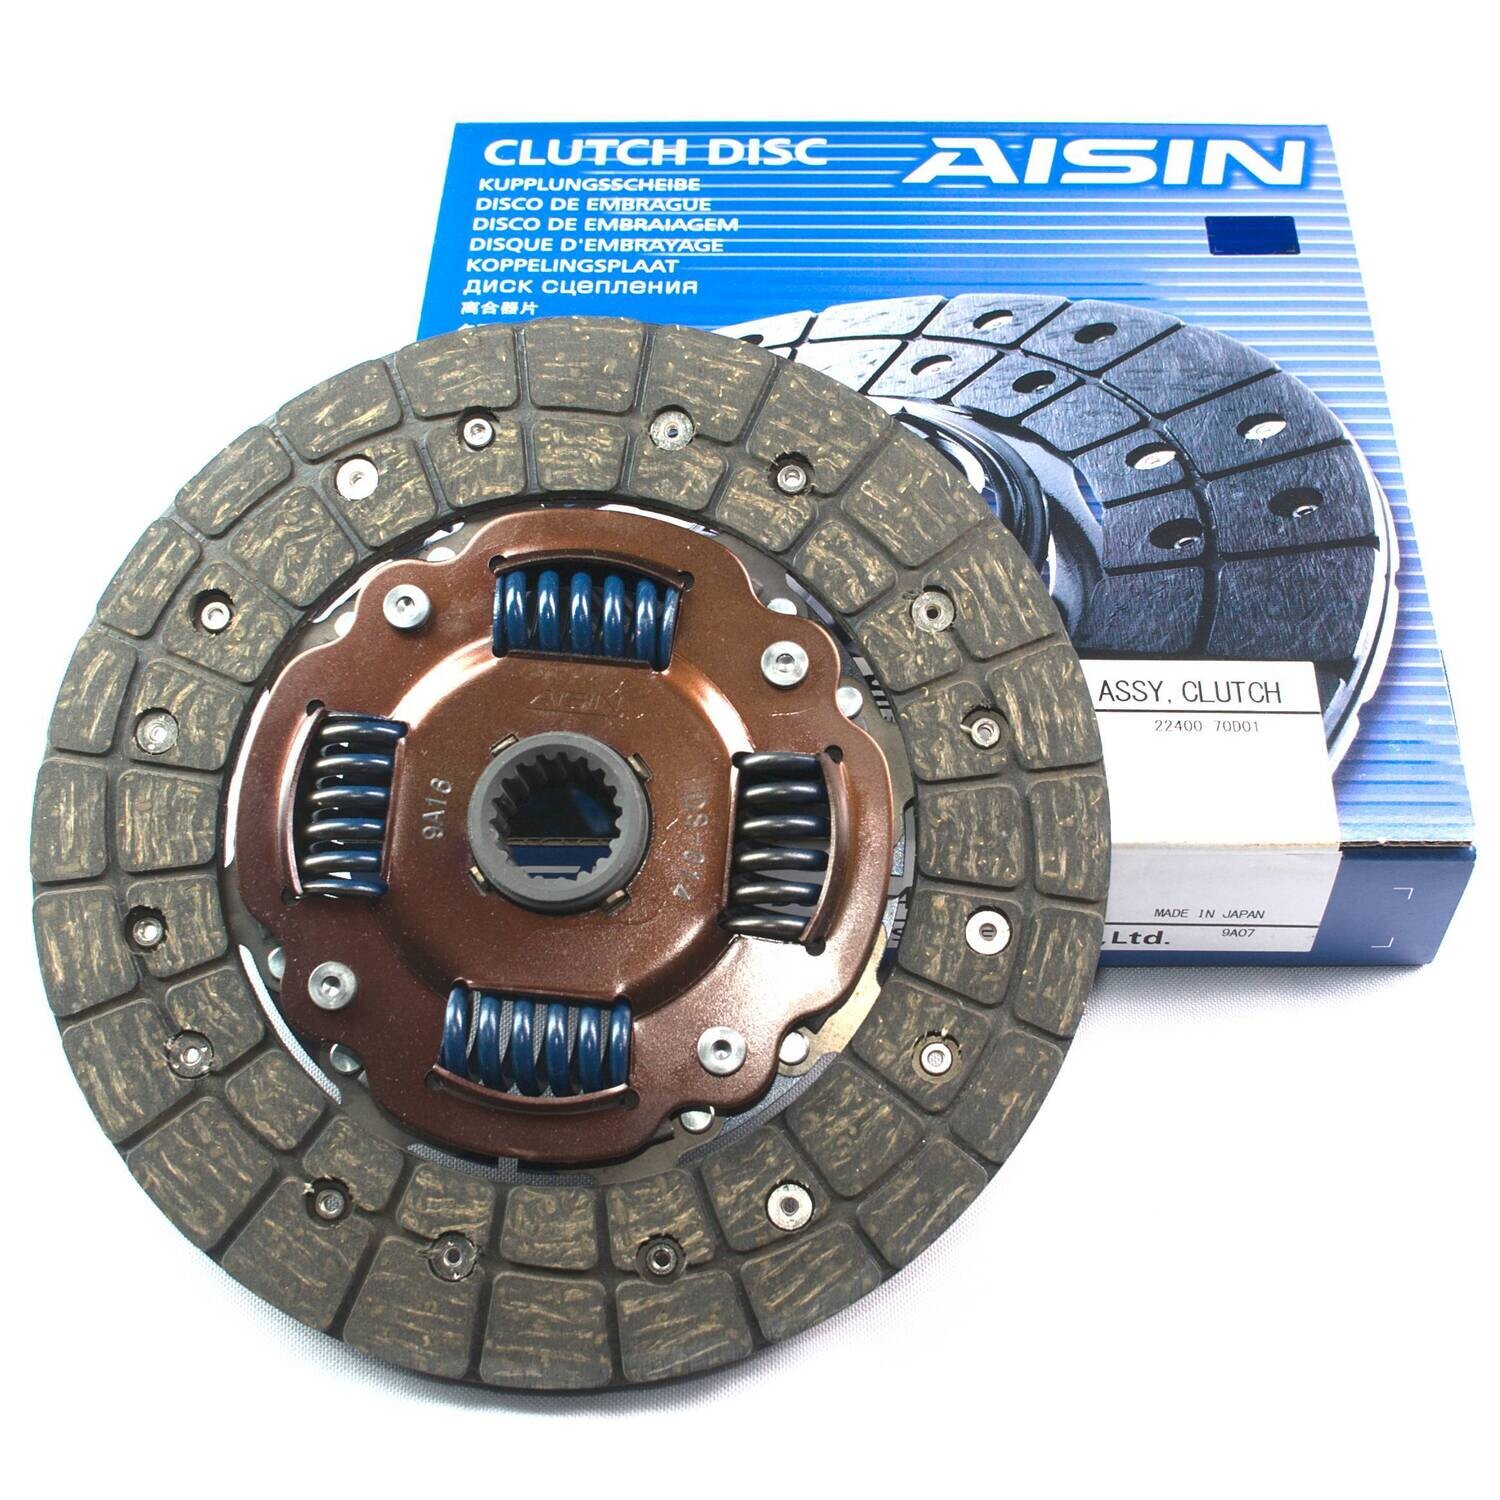 Aisin Clutch Disc Fits Suzuki Carry Every DA51T DB51T Mazda Scrum DG51B DG51T DG51V DH51T DH51V Non-Turbo F6A